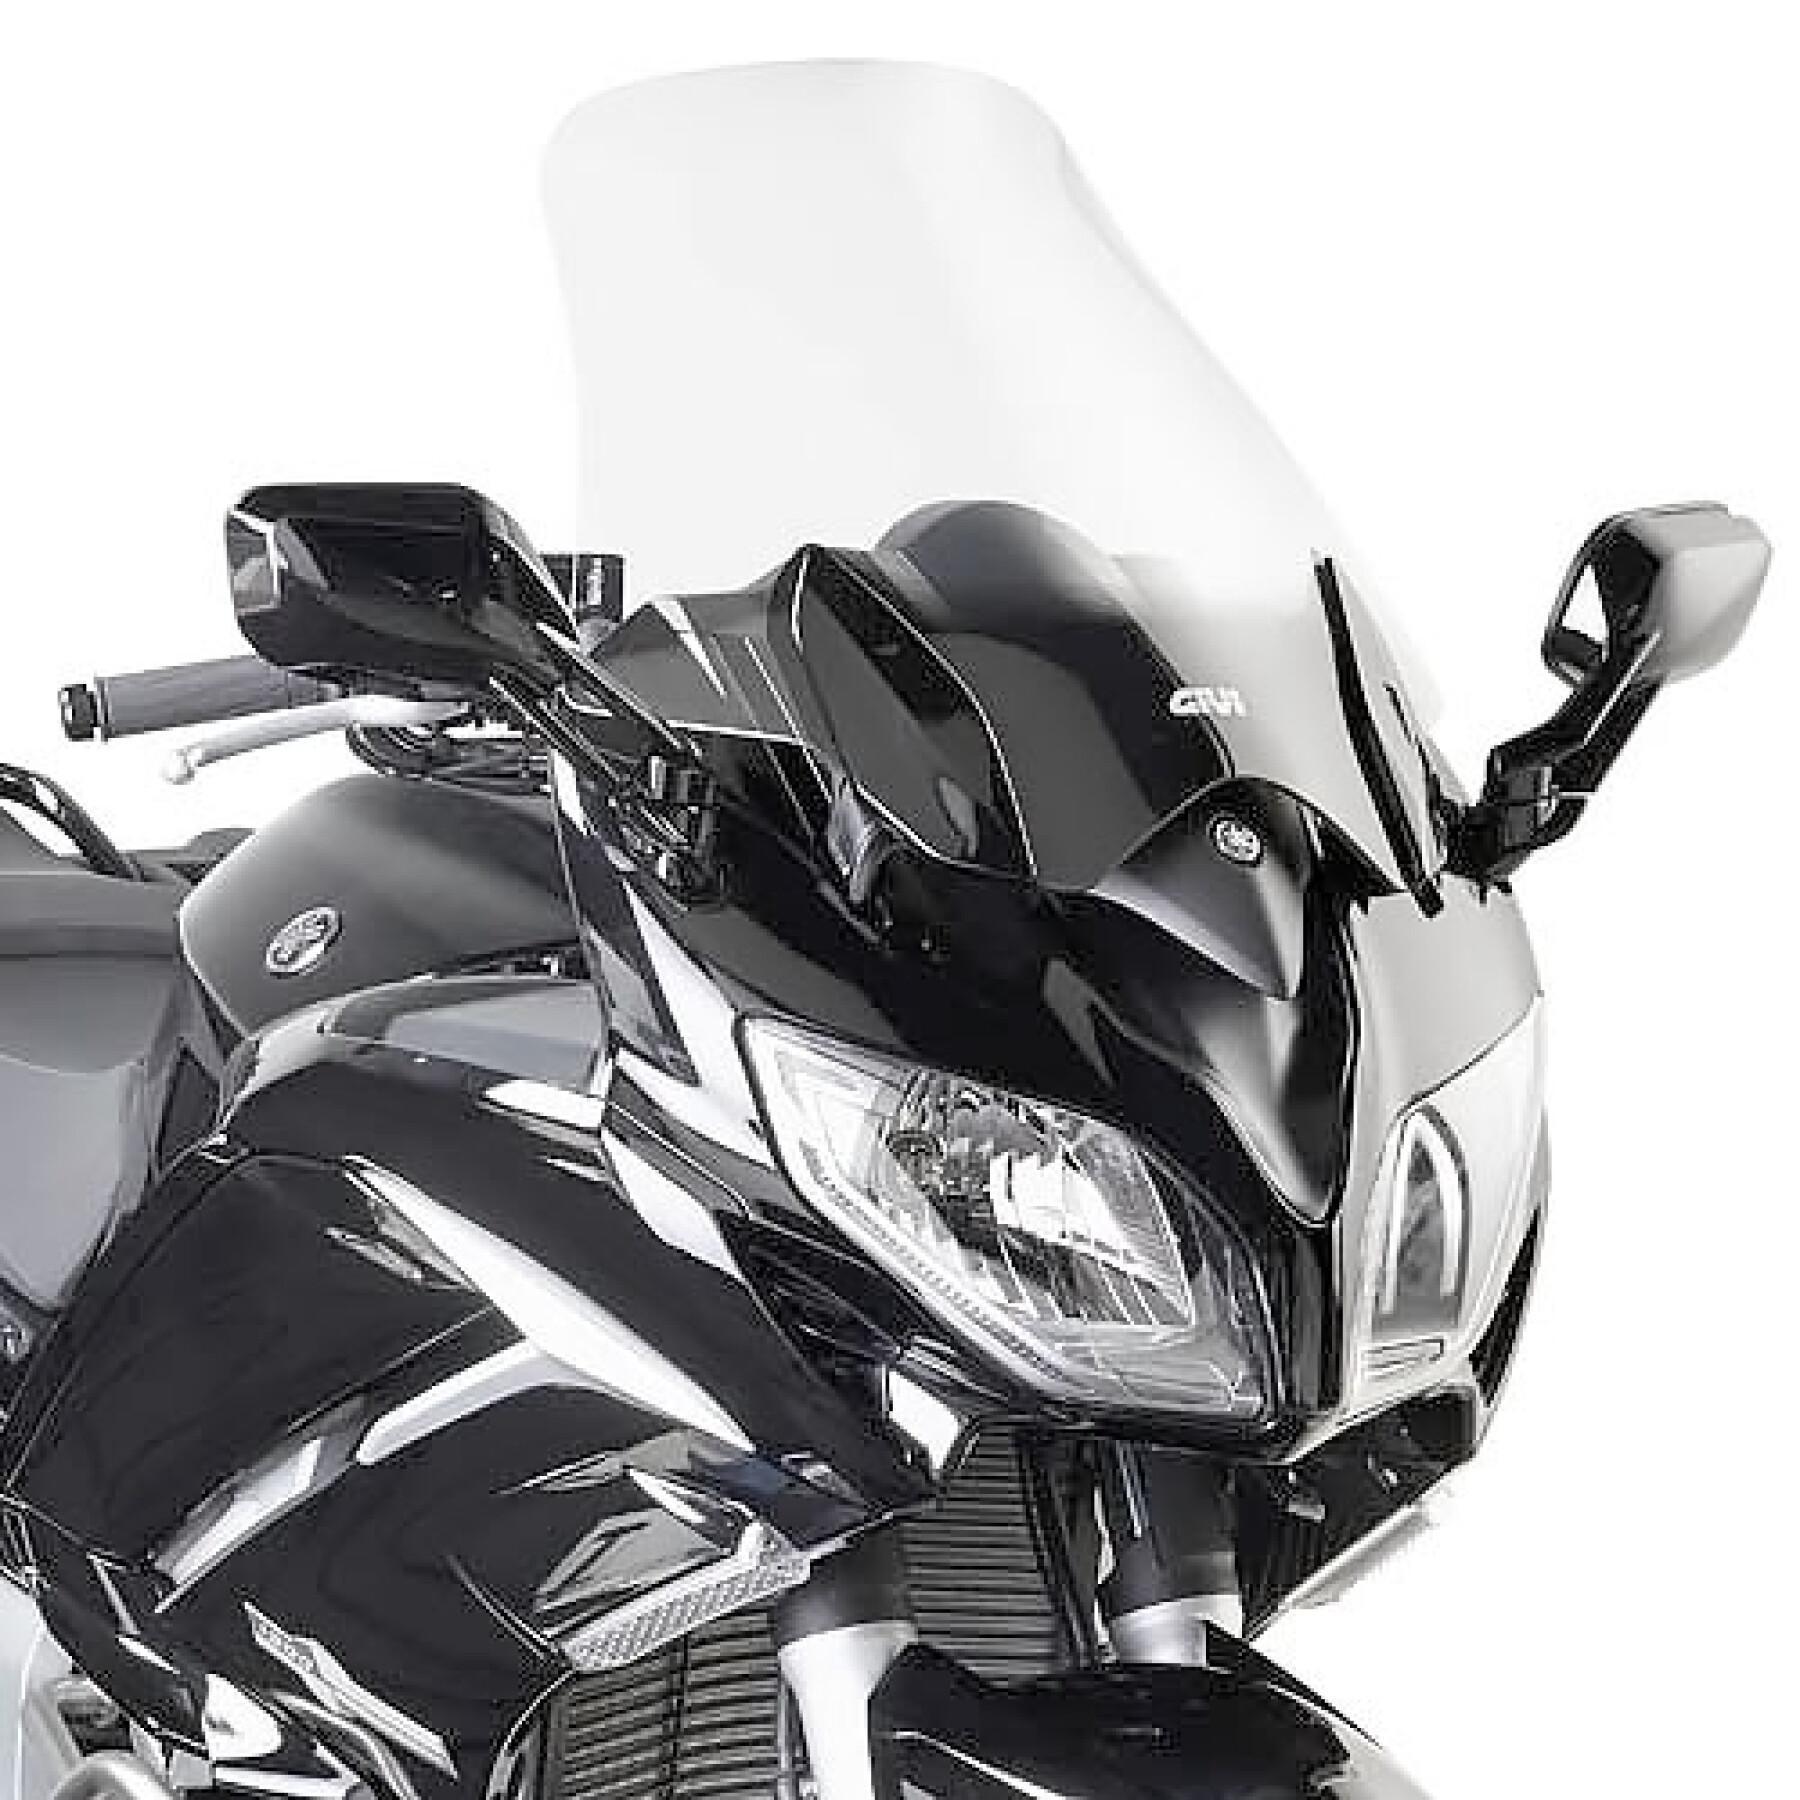 Burbuja de moto Givi Yamaha Fjr 1300 (2013 À 2020)